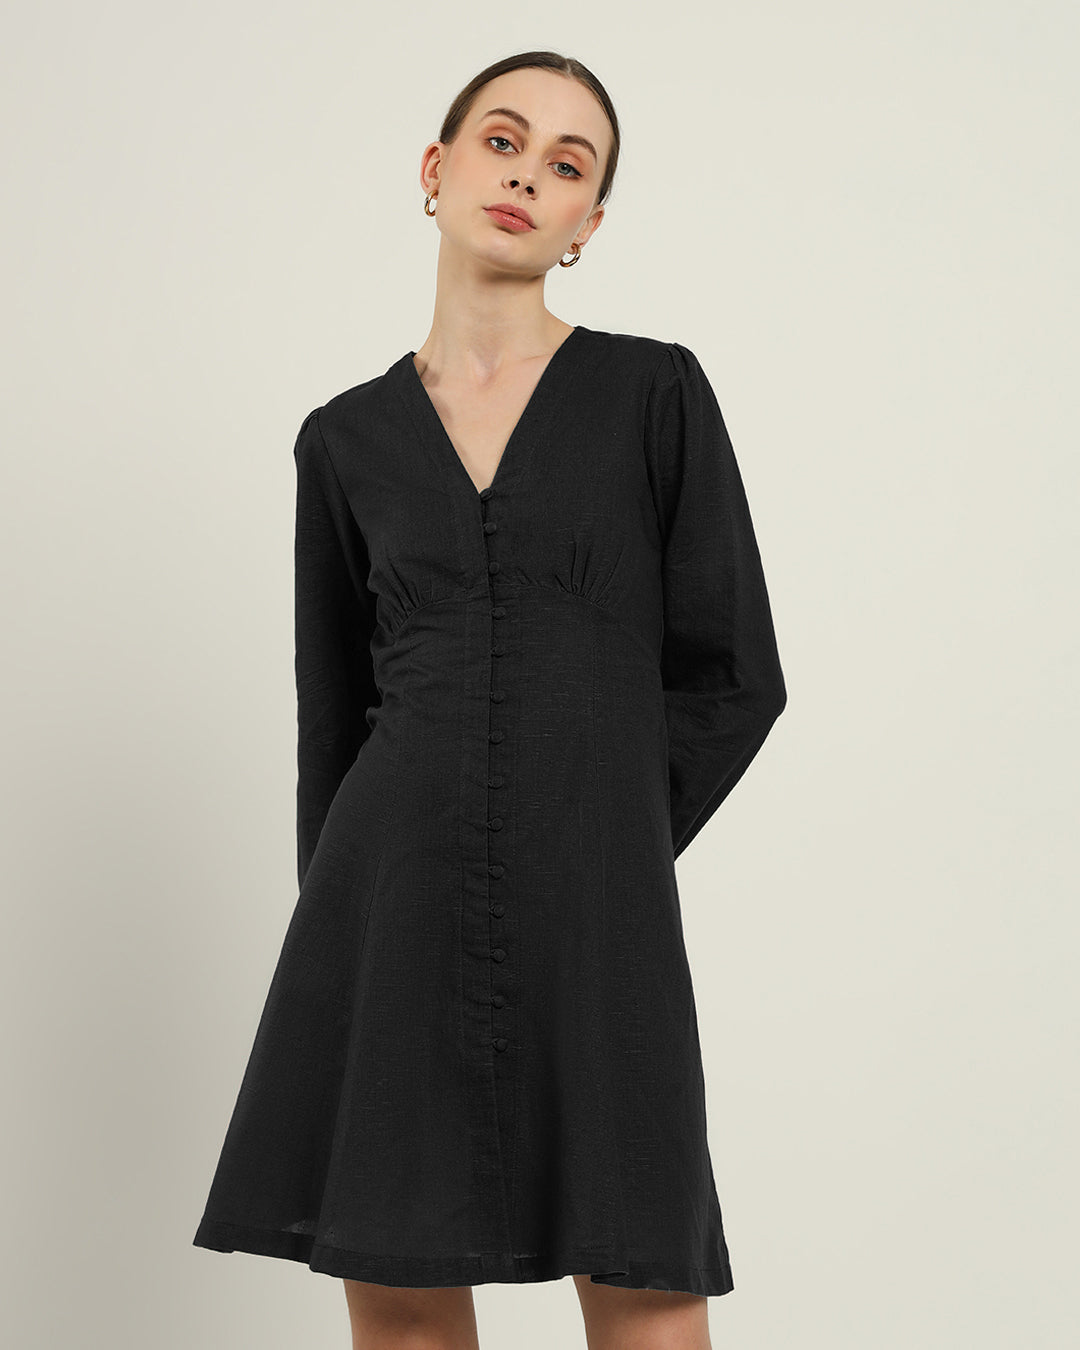 The Dafni Noir Dress